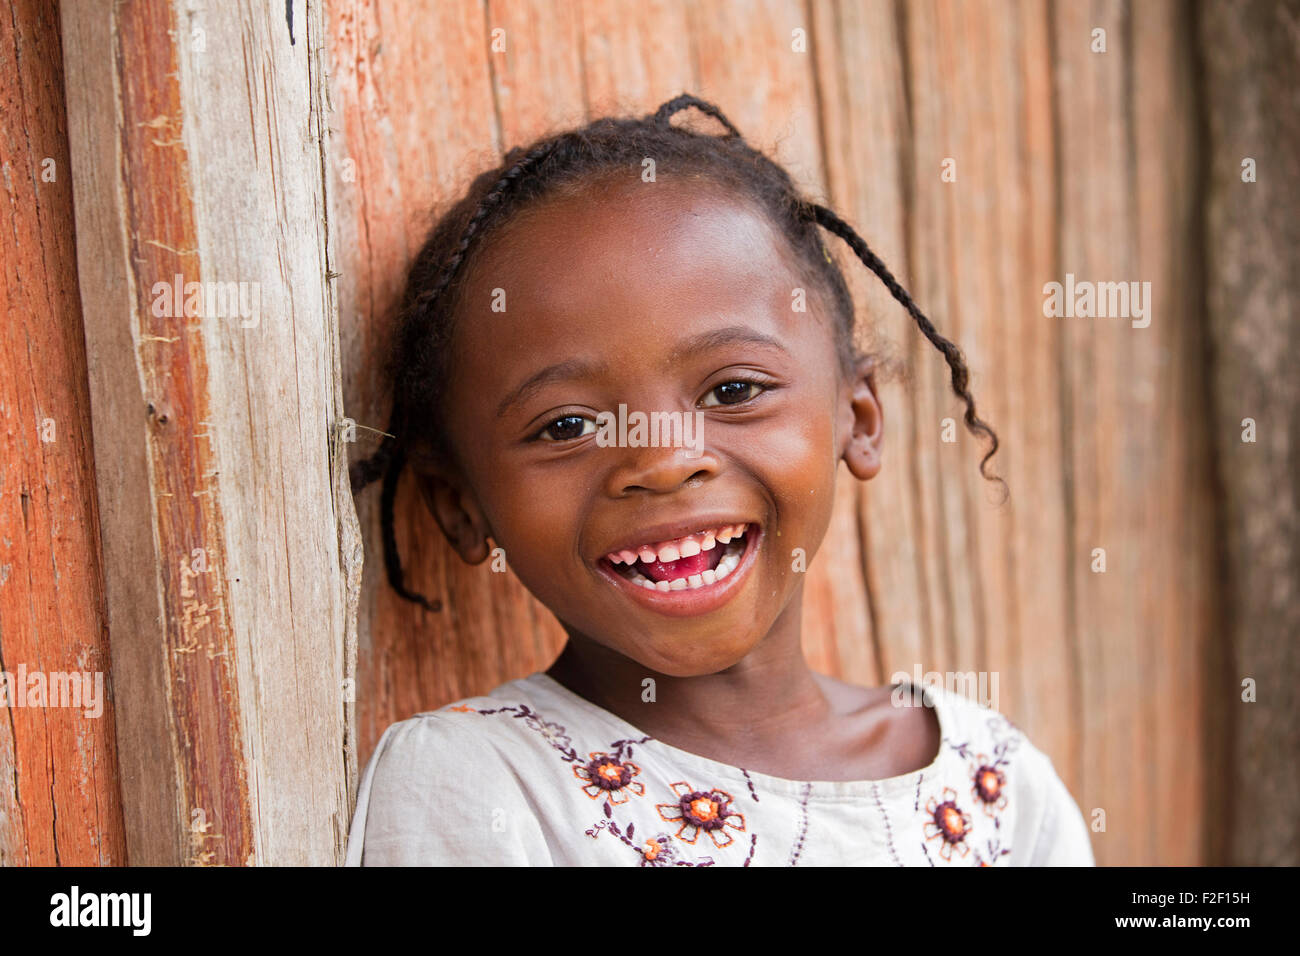 Porträt des Lächelns madagassischen kleines Mädchens mit geflochtenen Haaren, Vatovavy-Fitovinany, Madagaskar, Südosten Afrikas hautnah Stockfoto